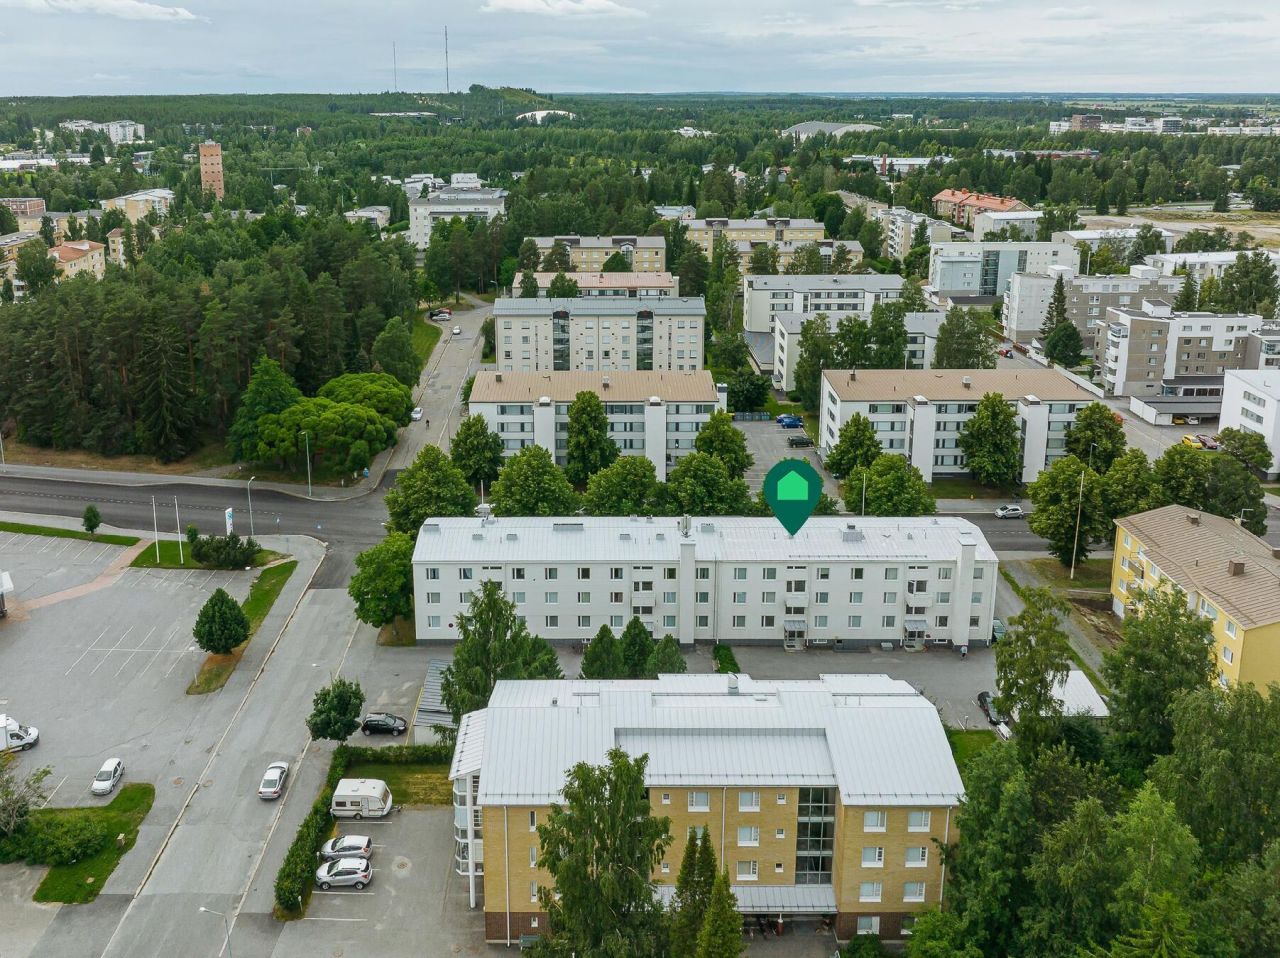 Flat in Seinajoki, Finland, 36.9 sq.m - picture 1